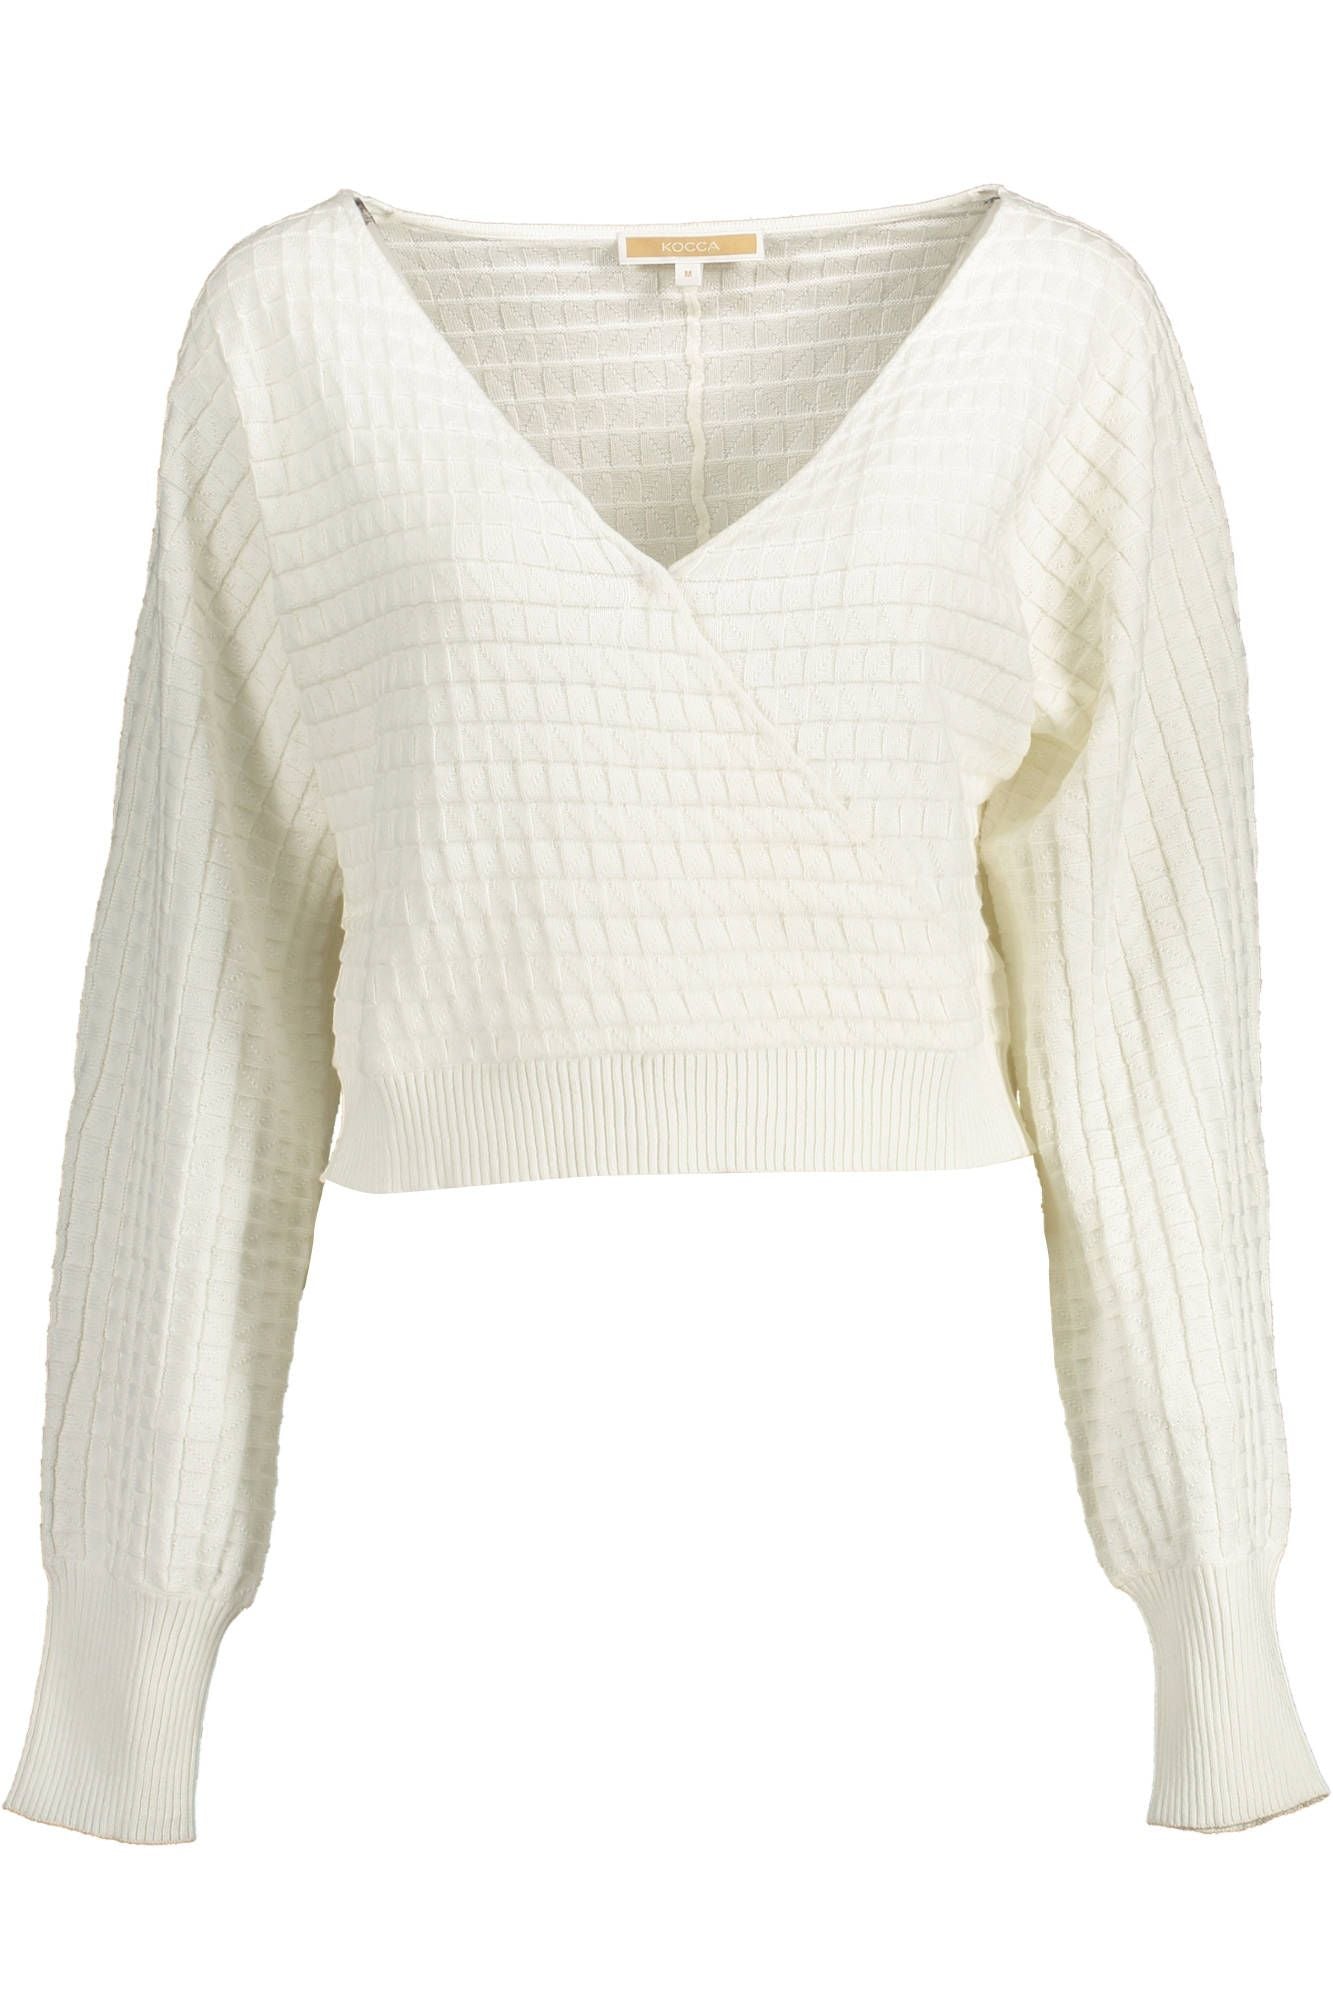 Kocca White Cotton Sweater